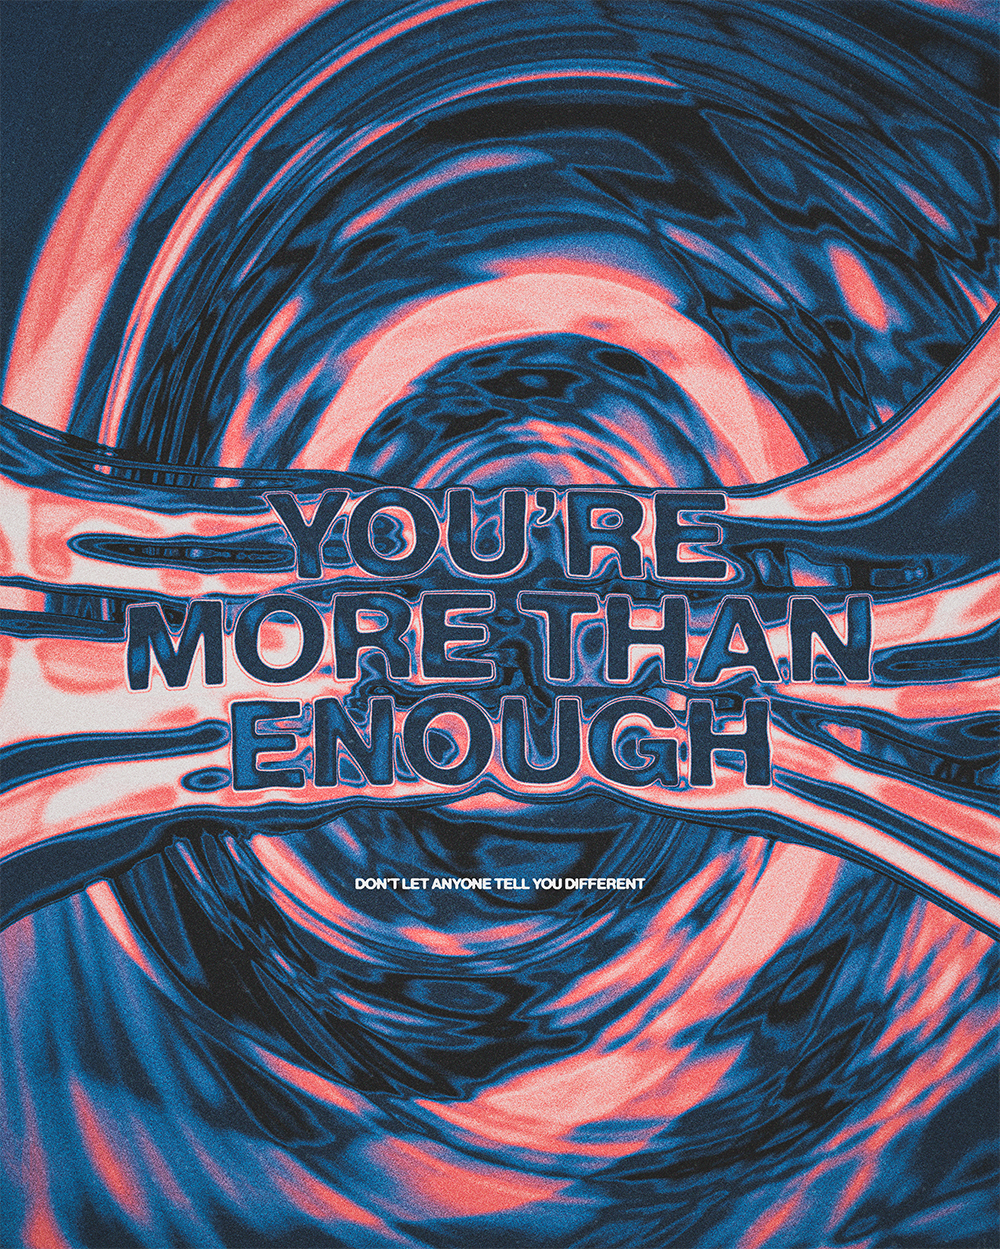 “More than enough”